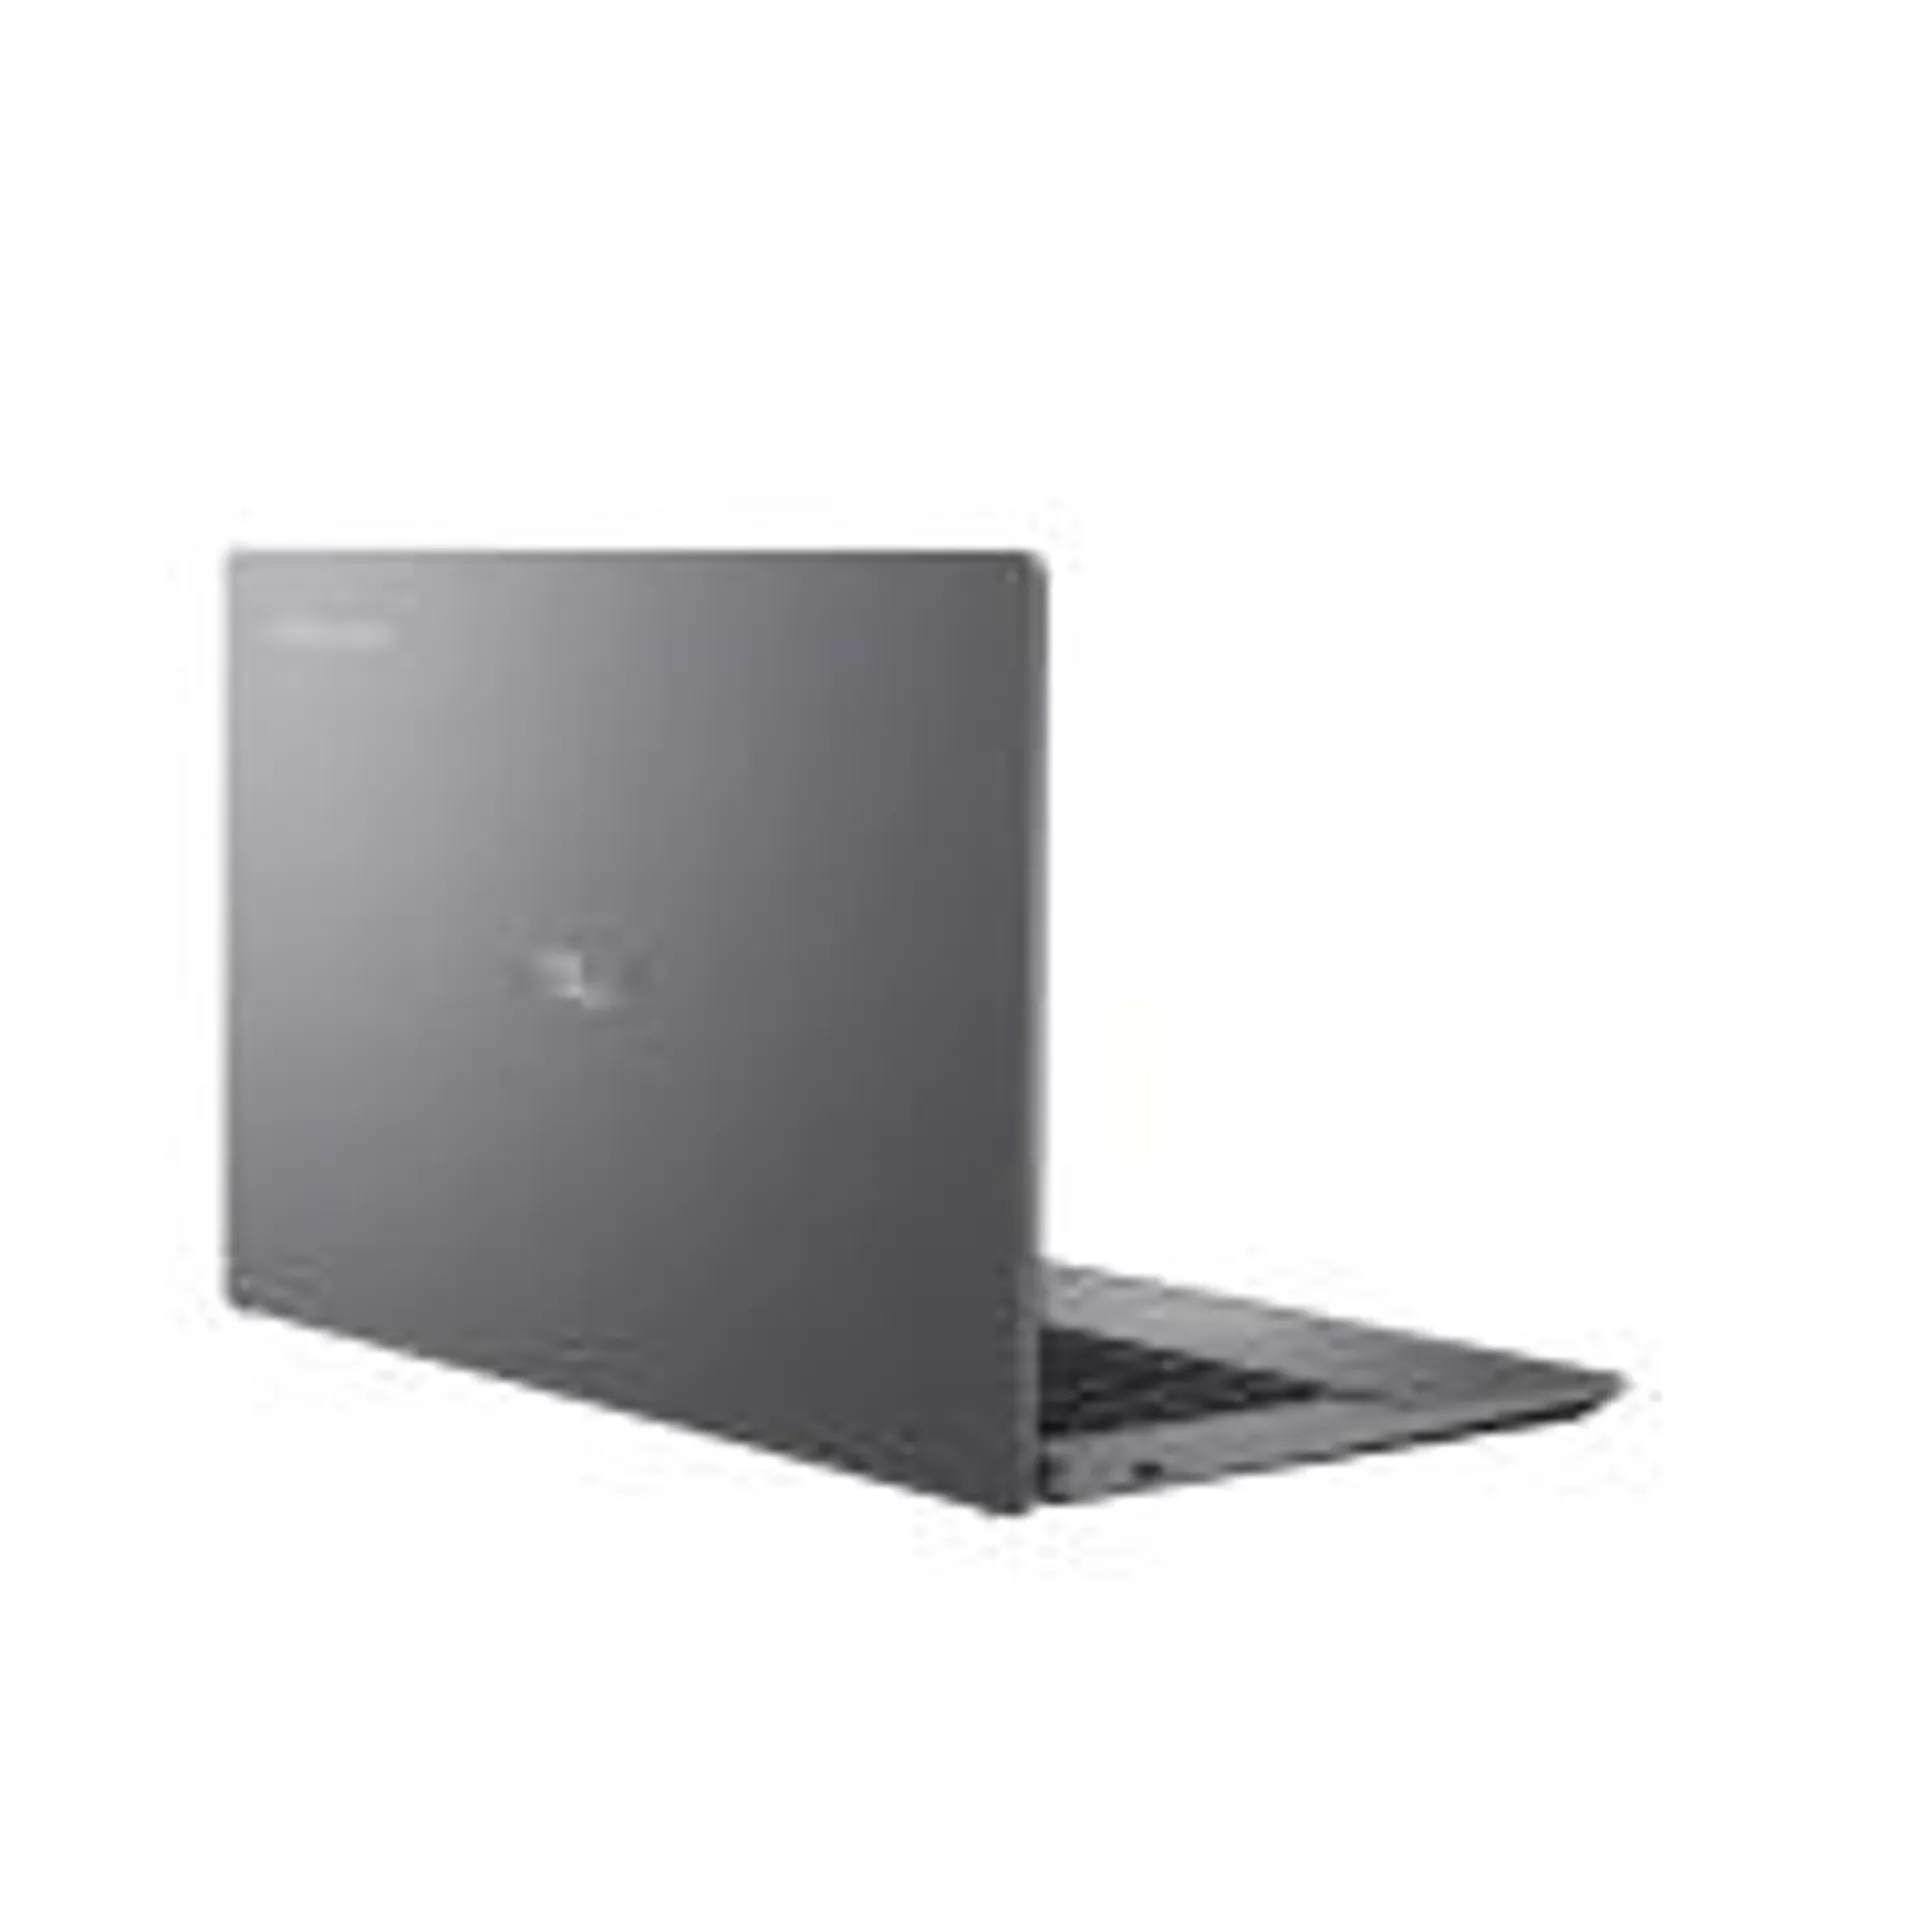 ASUS Chromebook Plus CX34 (CX3402)